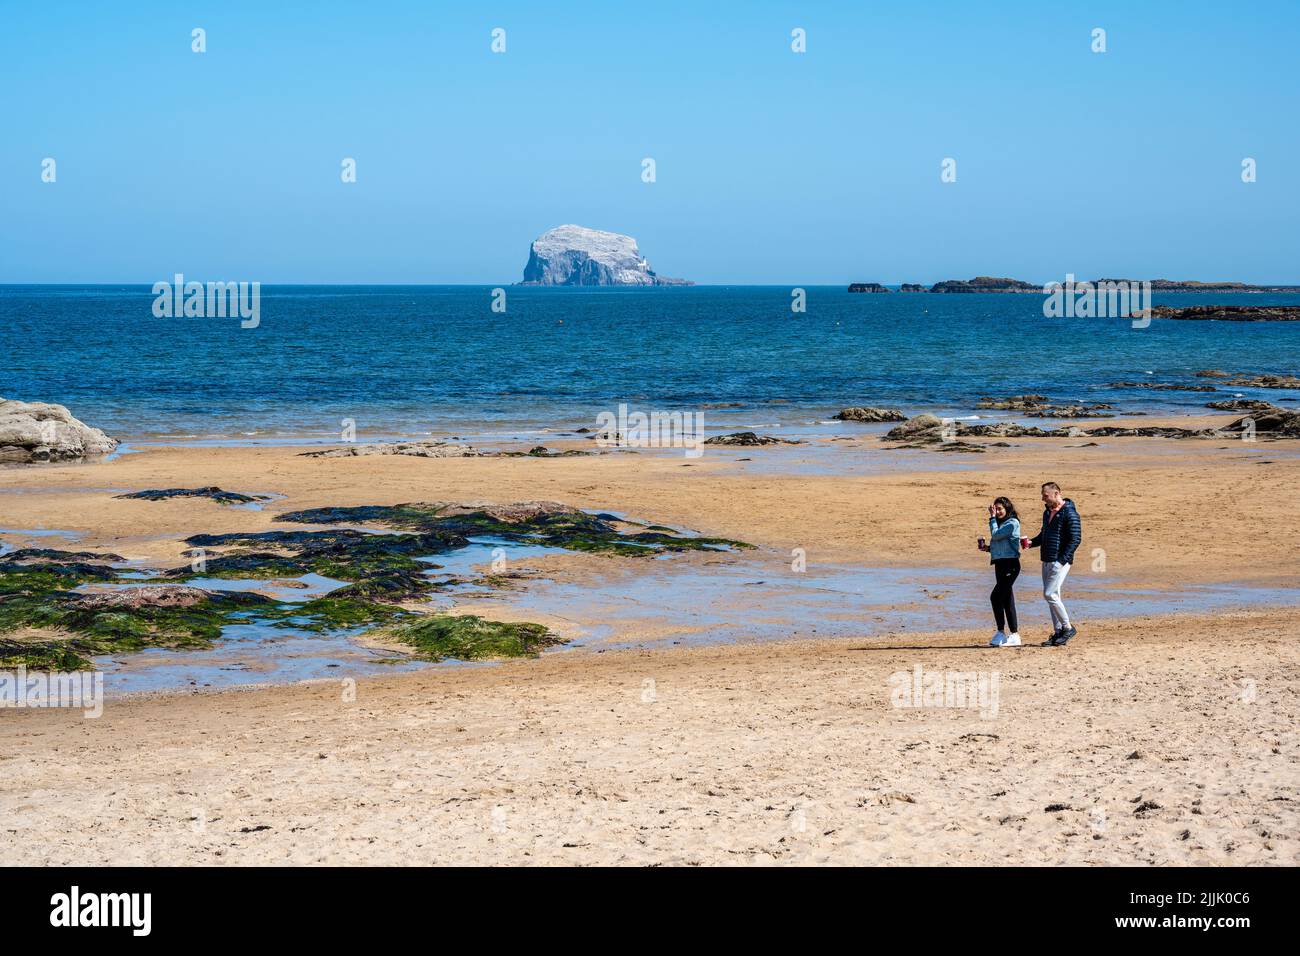 Jeune couple bénéficiant du soleil de printemps sur la plage de Milsey Bay, avec le Bass Rock au loin, North Berwick, East Lothian, Écosse, Royaume-Uni Banque D'Images